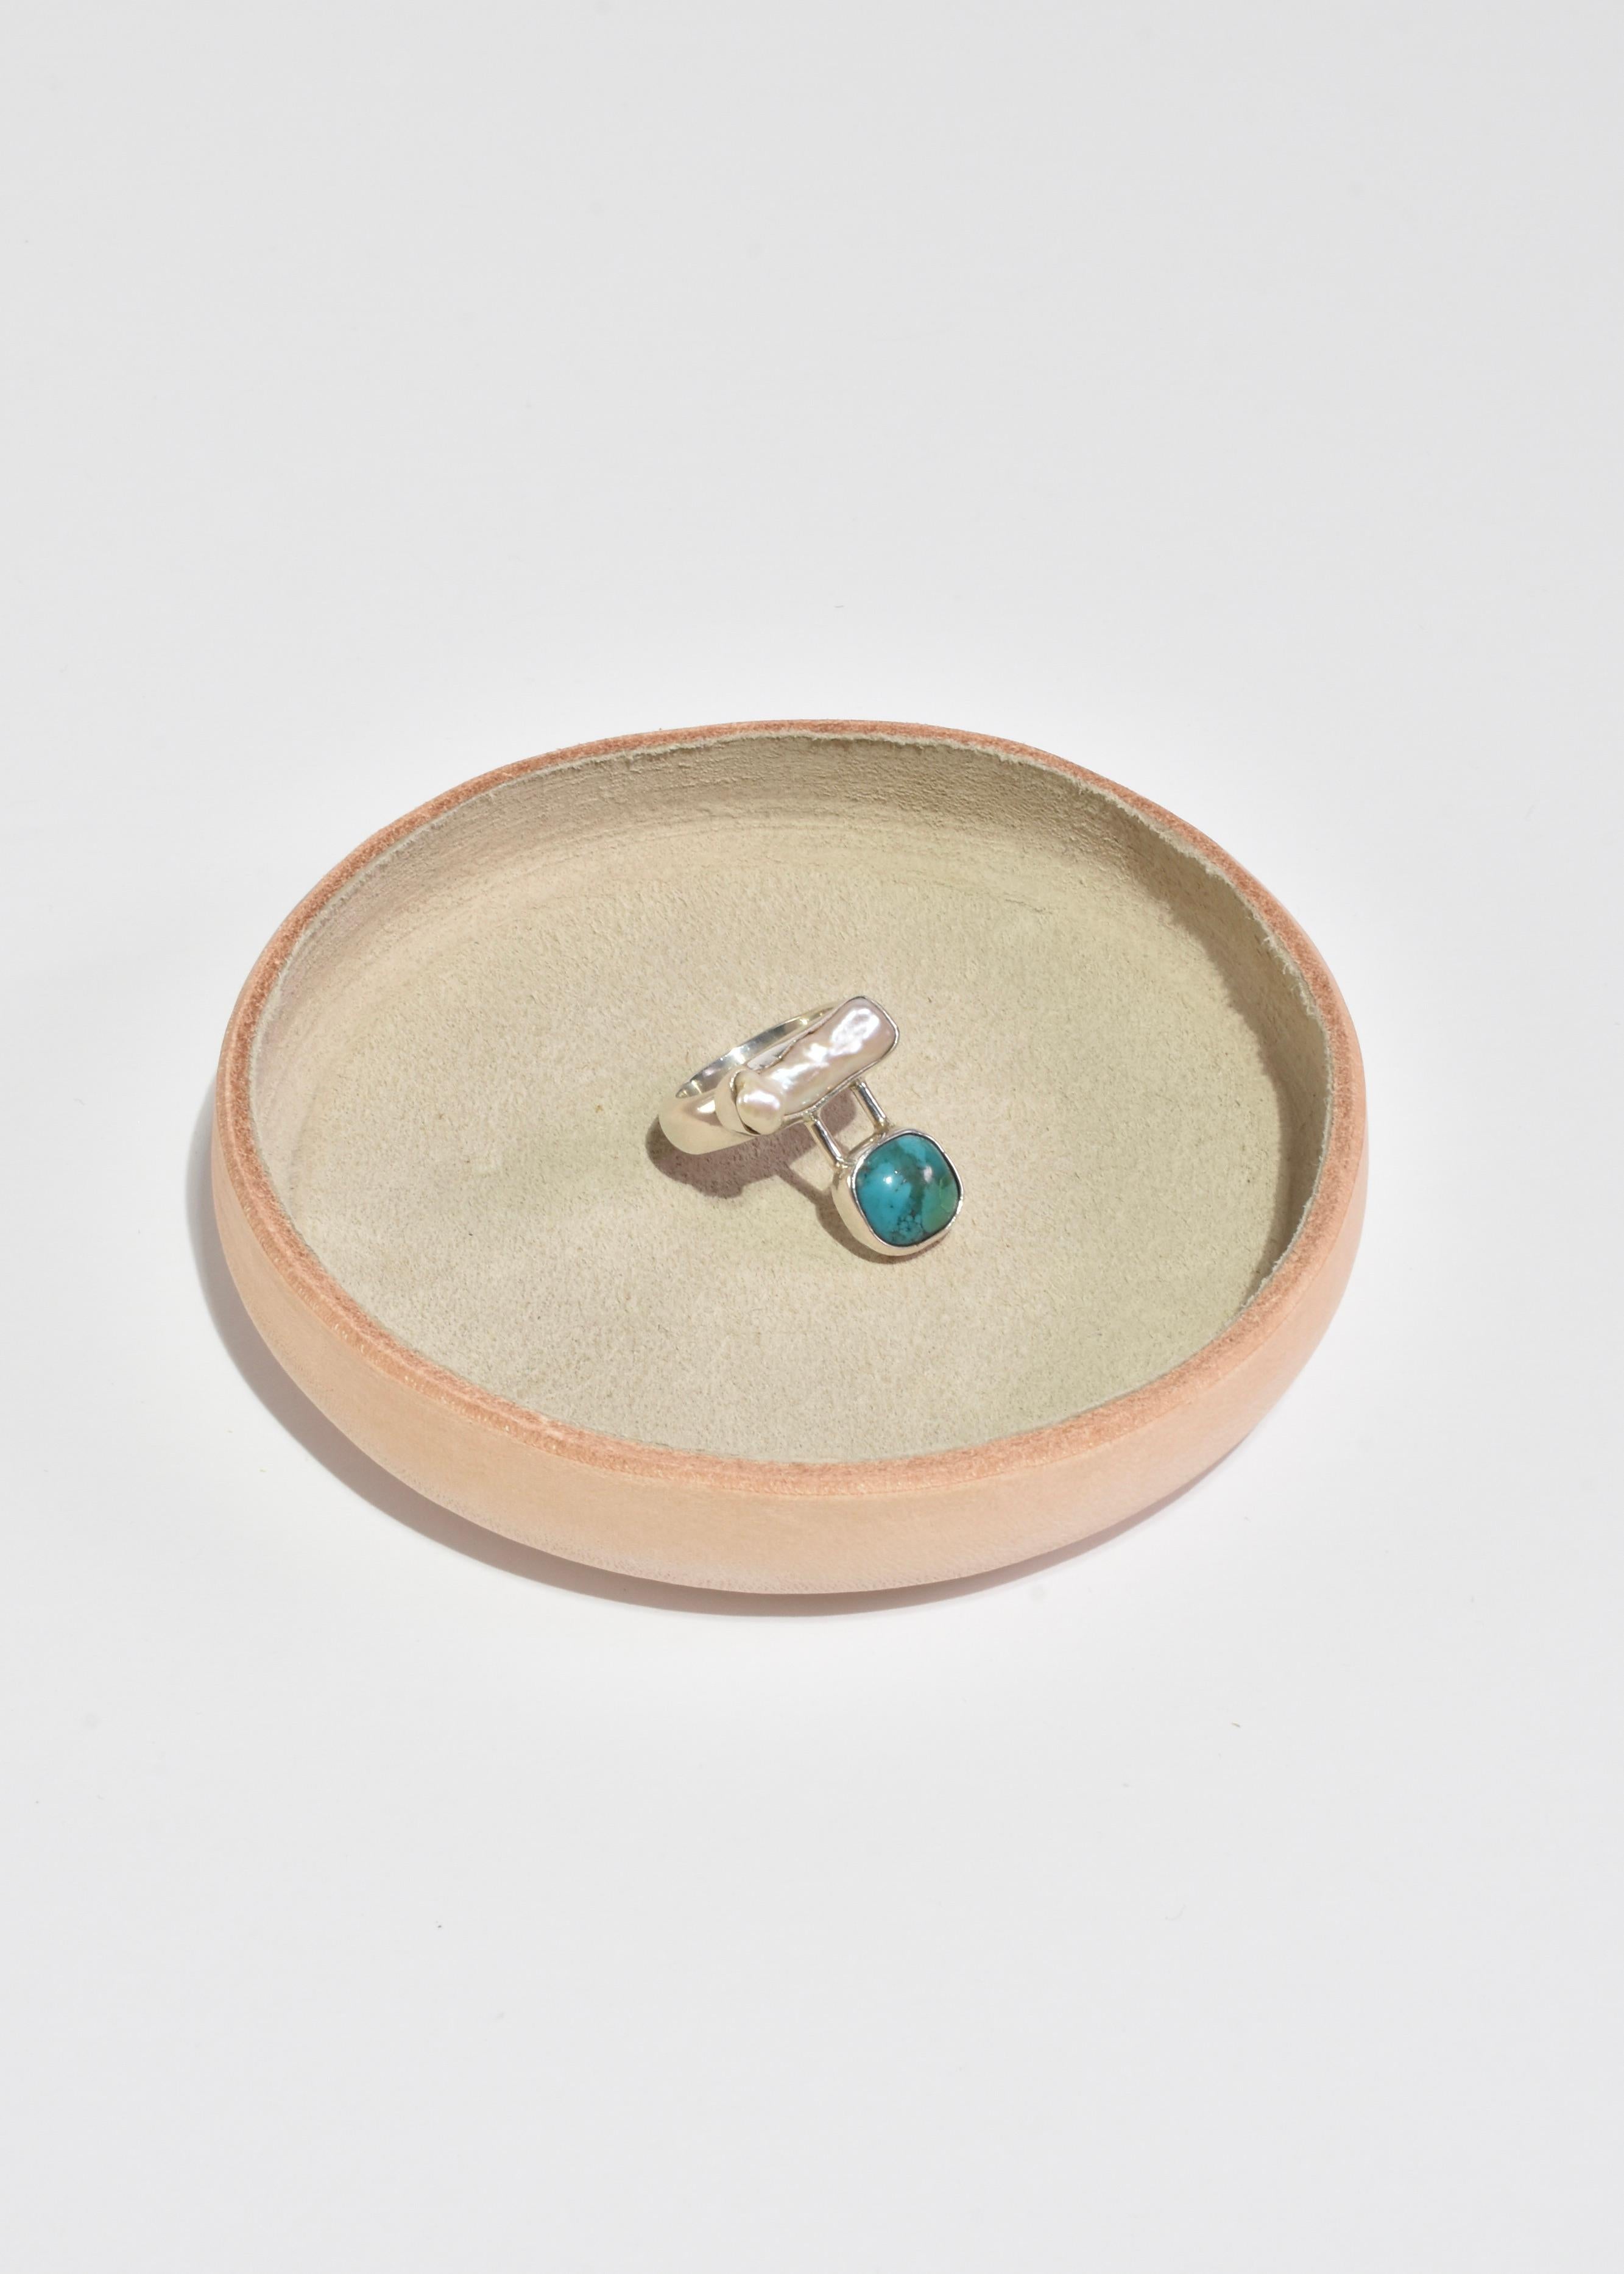 Rare bague vintage faite à la main avec une perle d'eau douce et une pierre turquoise. Estampillé 925.

Matière : Argent sterling, perle, turquoise.